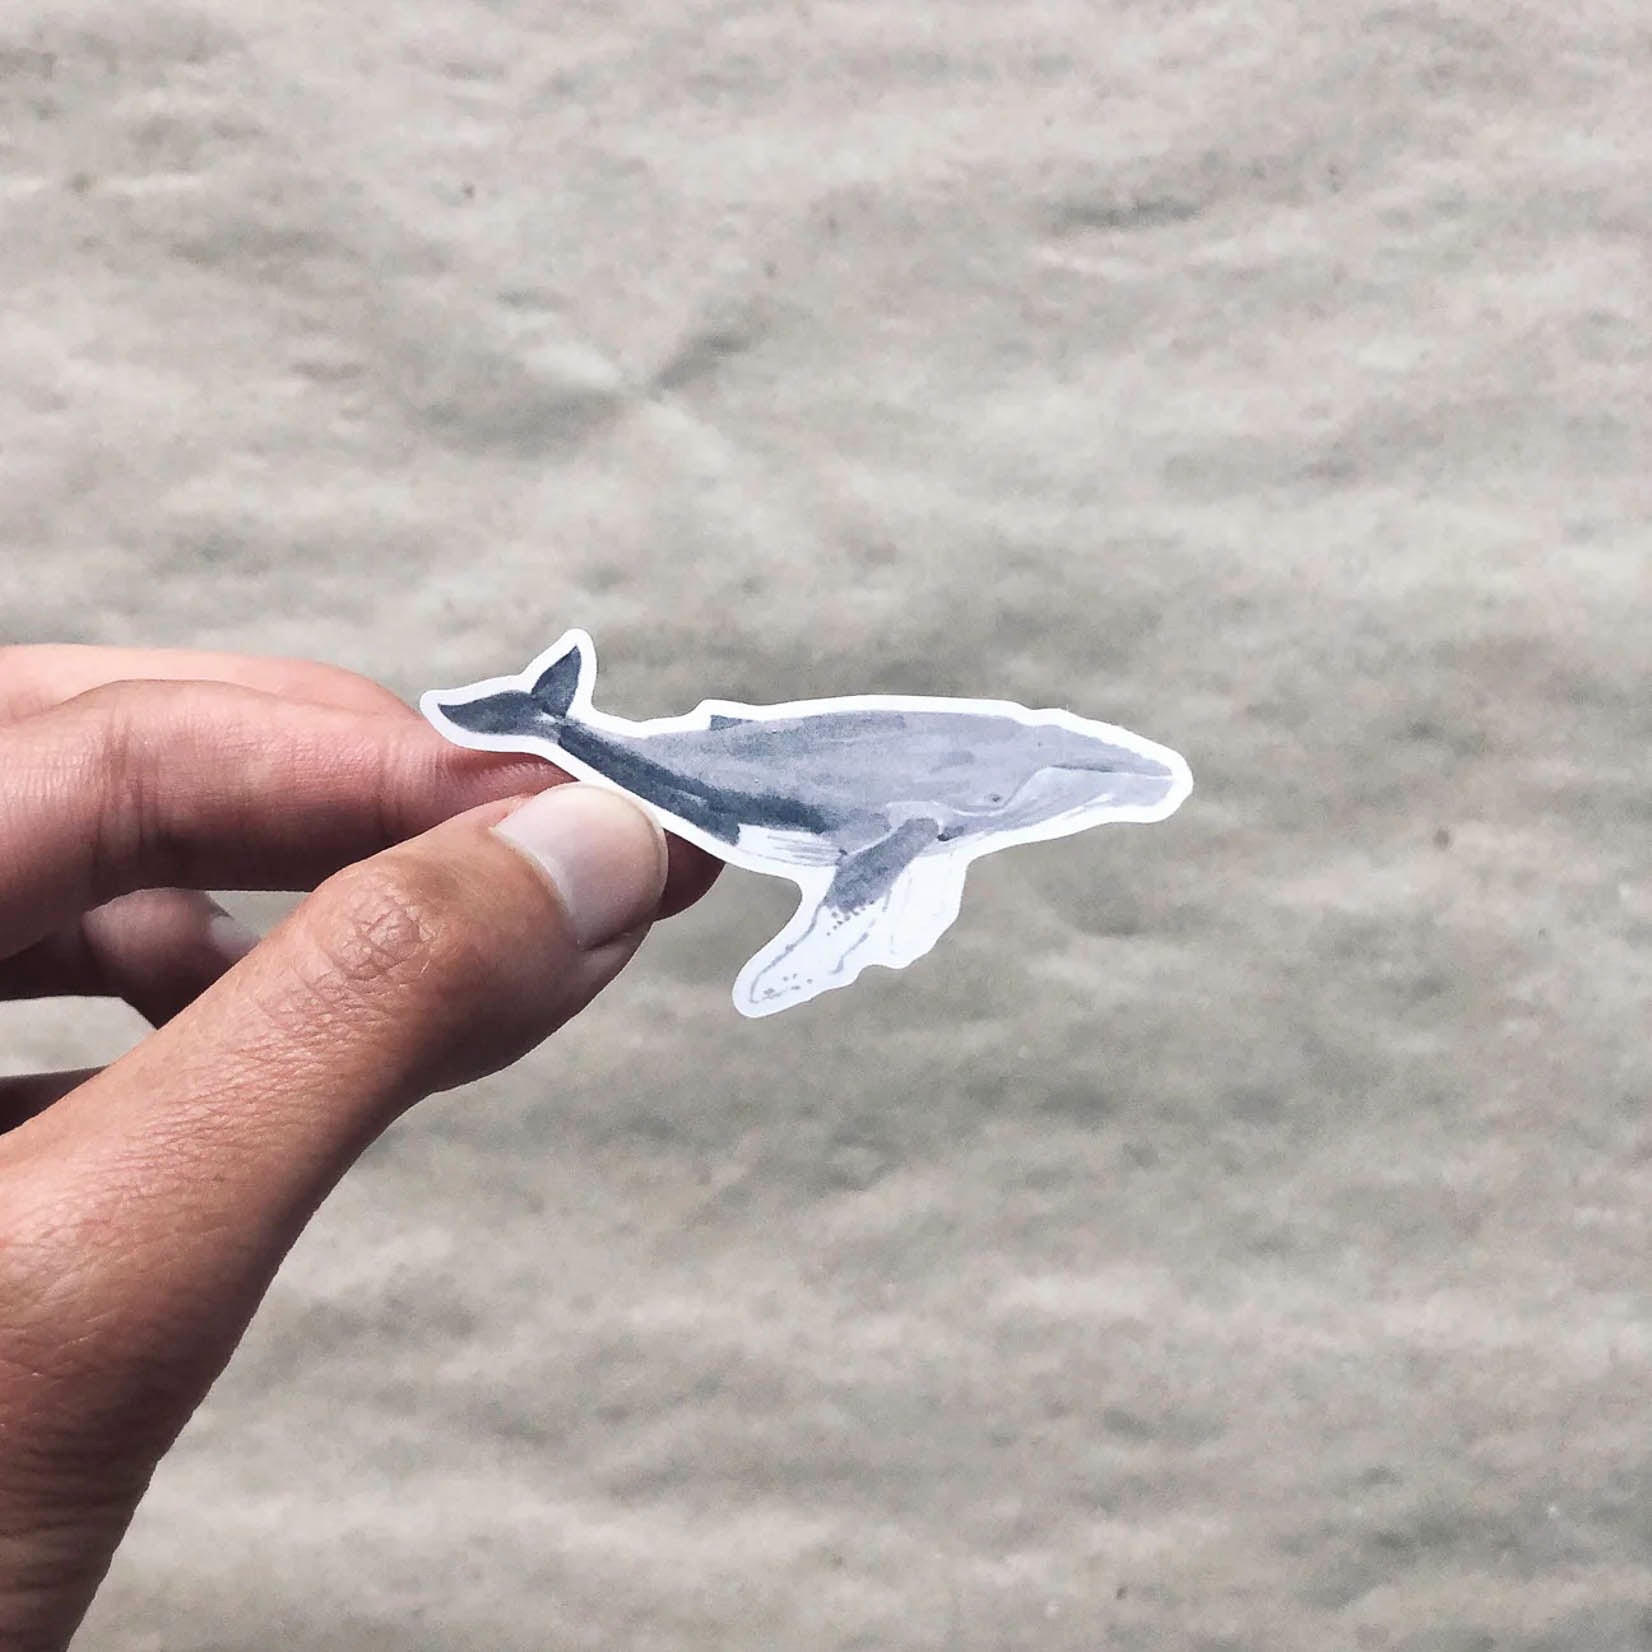 tucán y limón Sticker Aufkleber aus Recyclingpapier ohne PVC handillustriert mit Walfischen